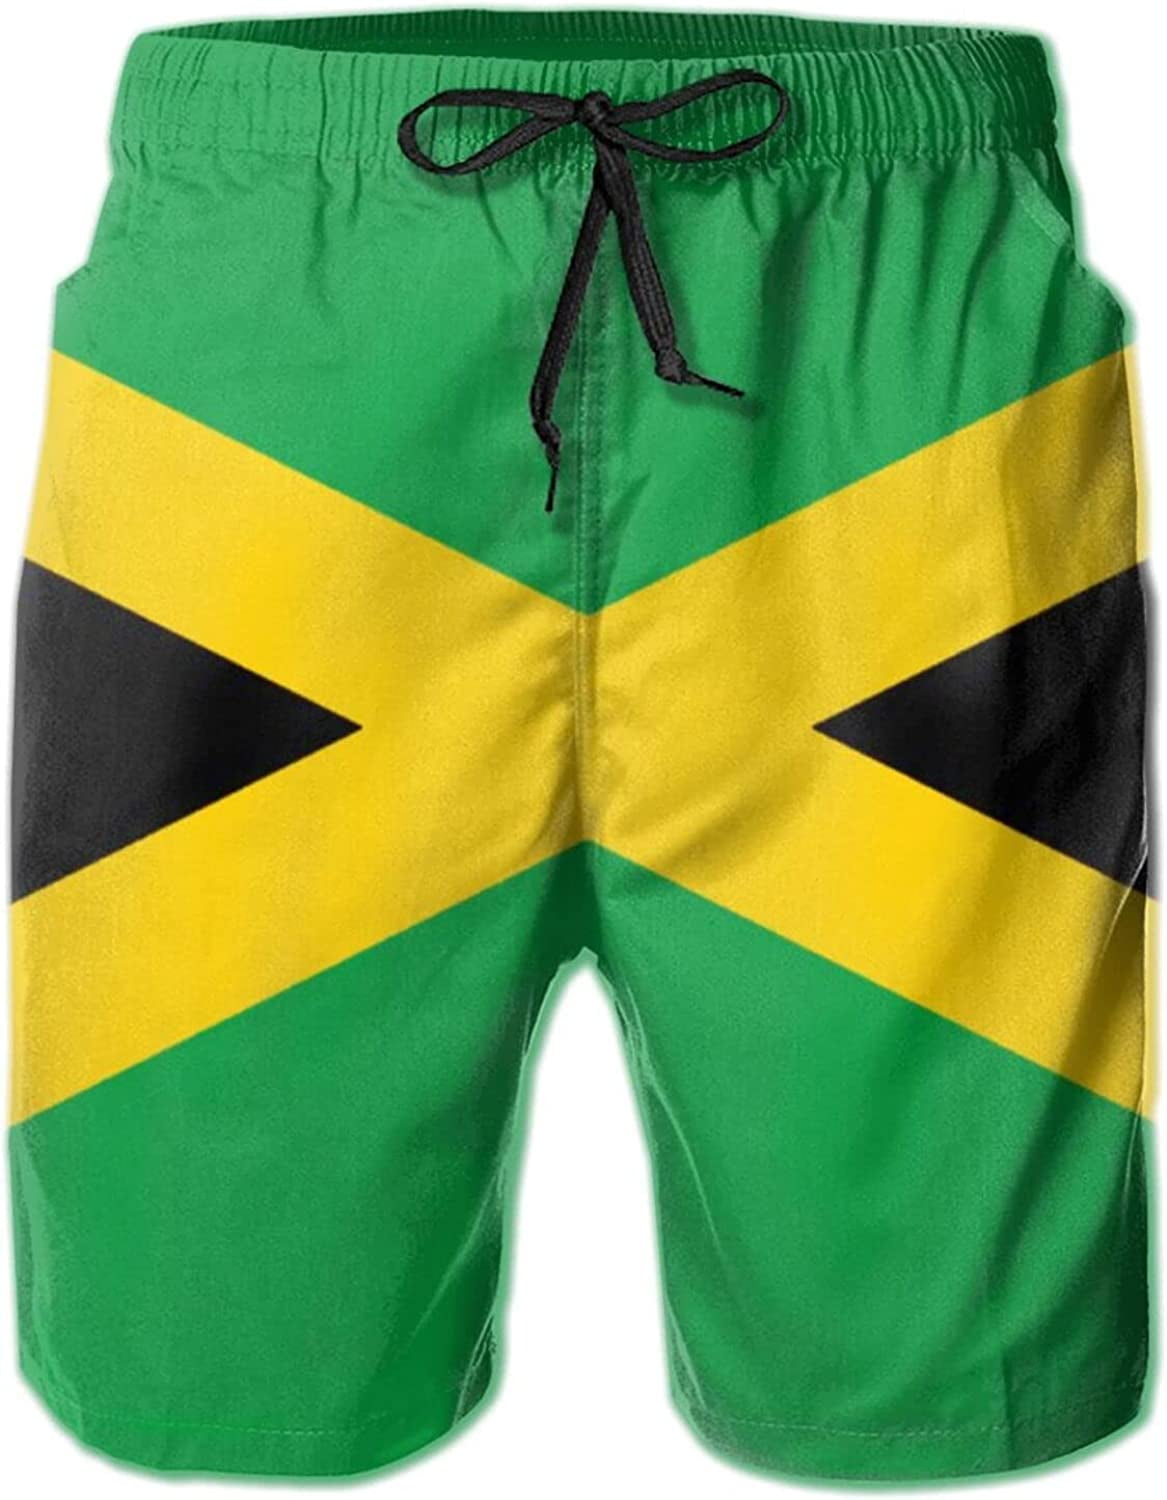 Men's Jamaica Flag Swim Trunks Mans Shorts Summer Swim Trunks S-3XL ...